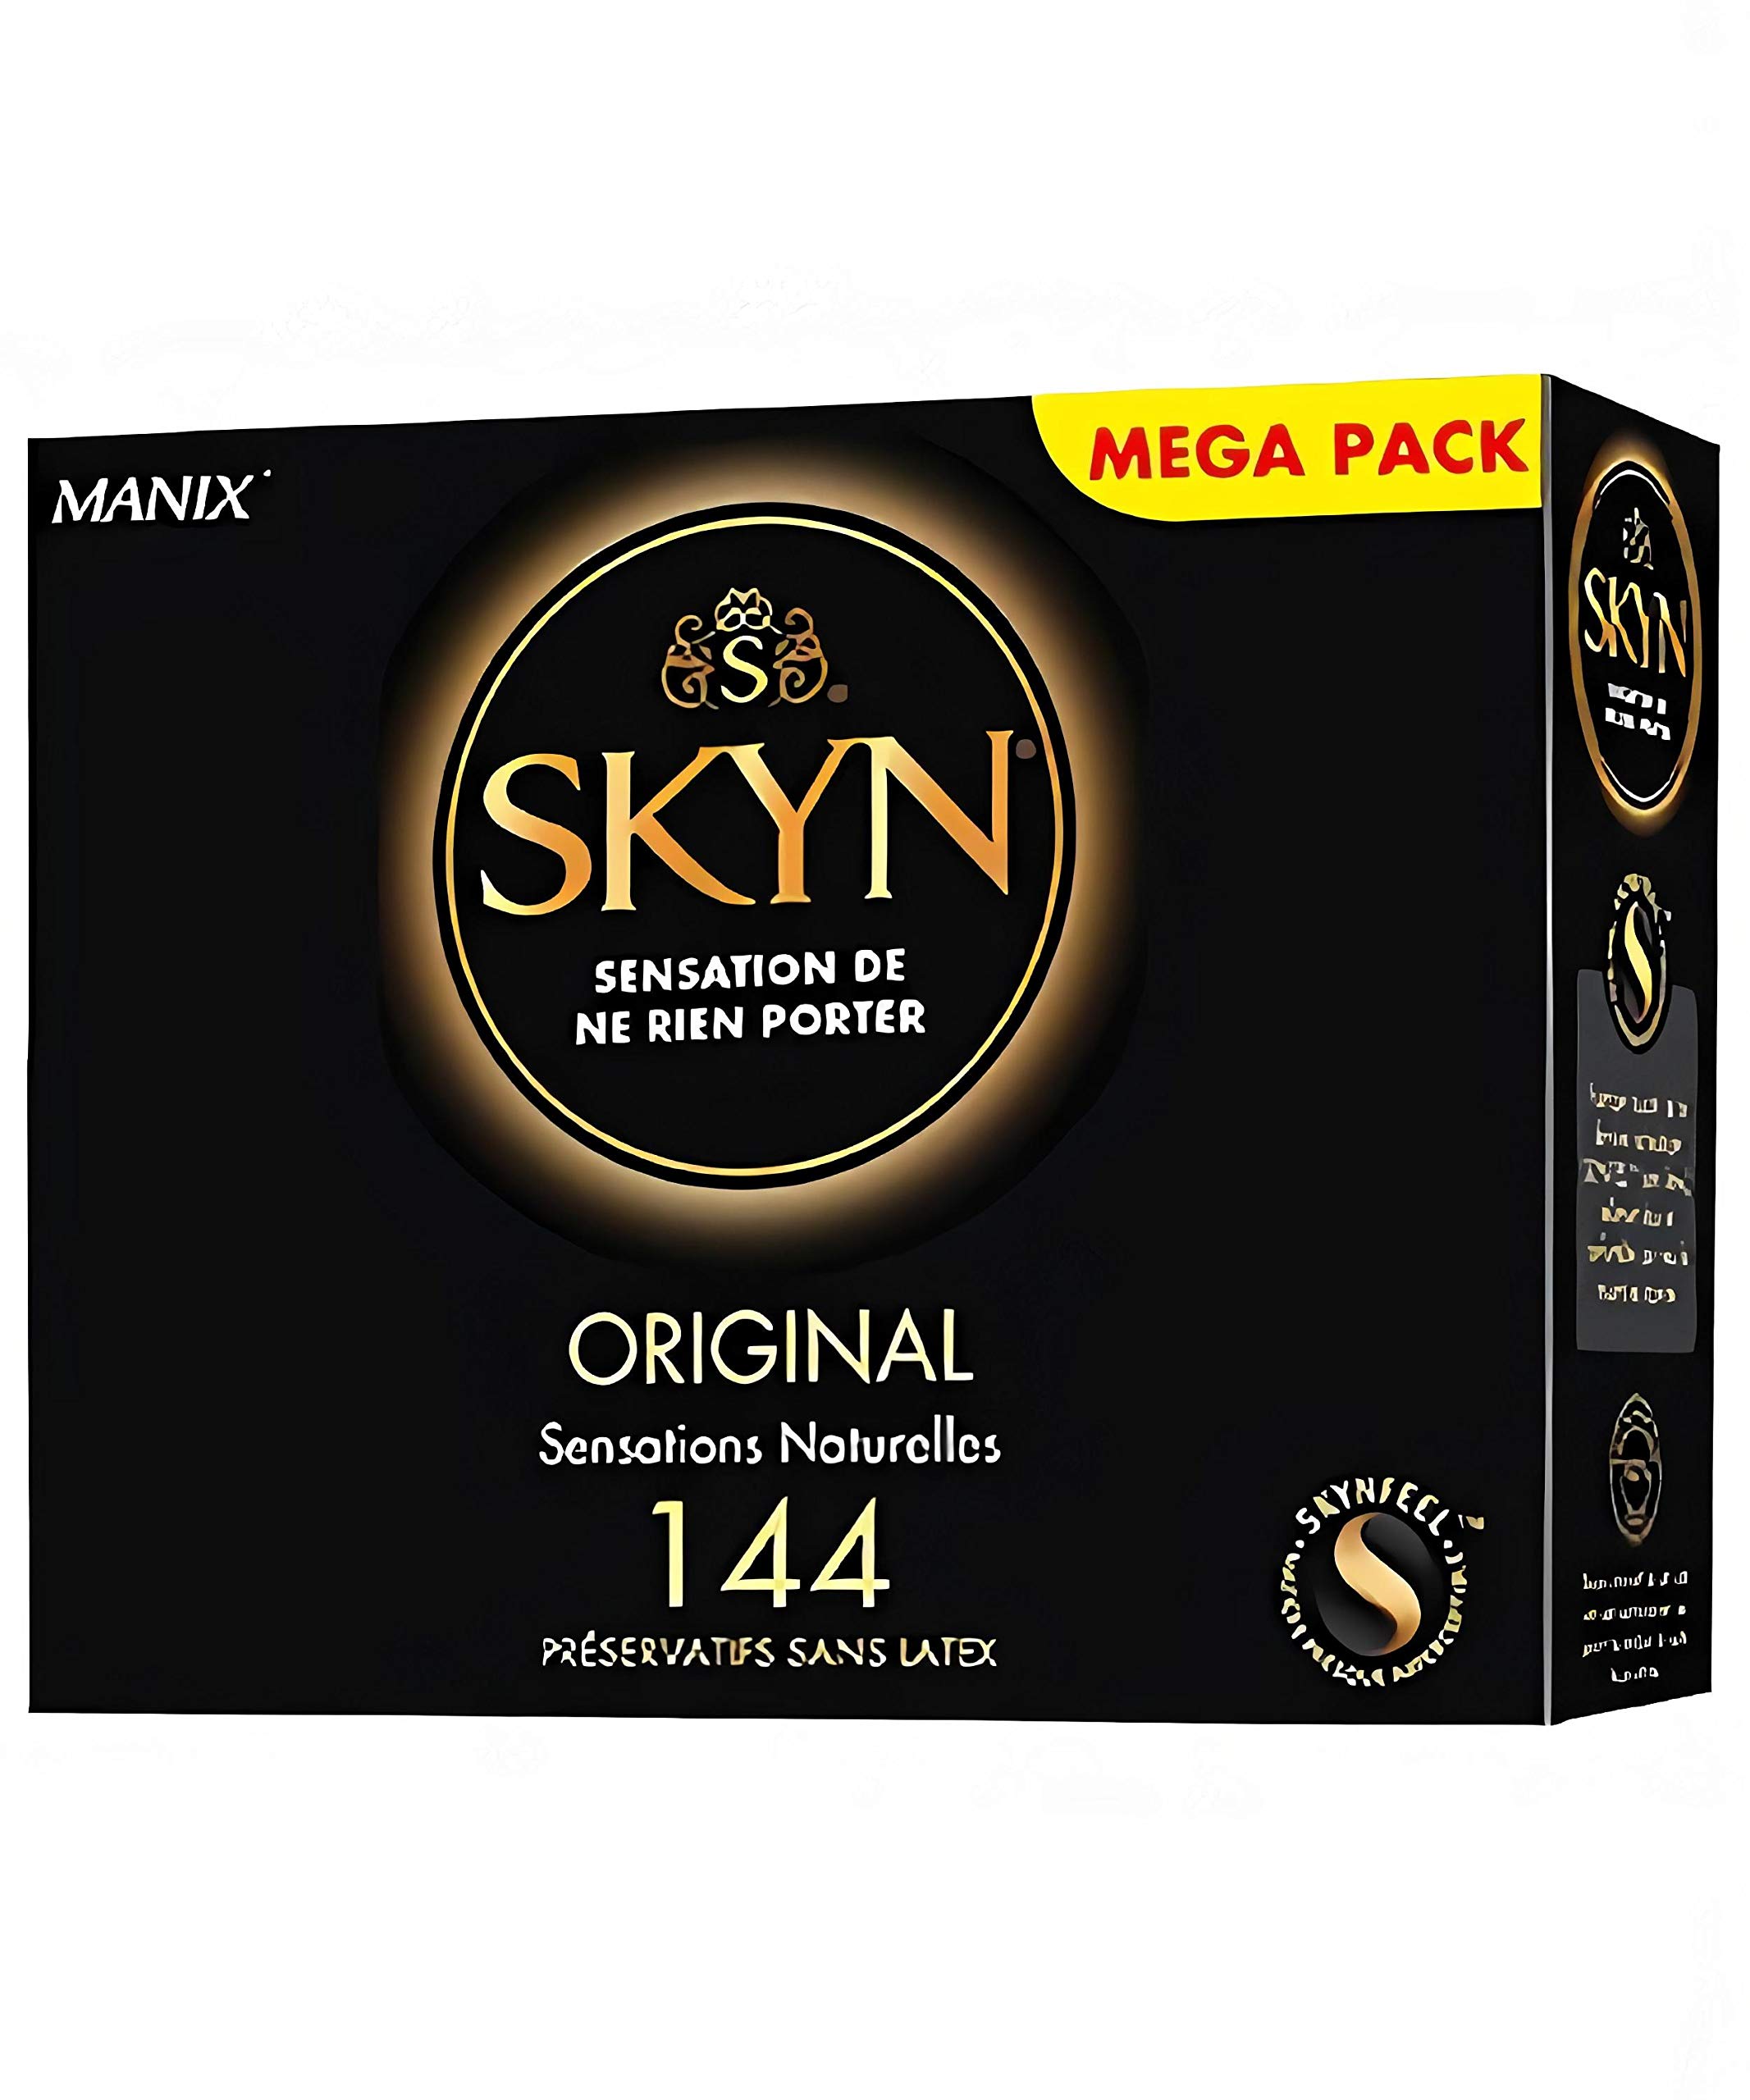 SKYN Original Kondome ultra-weich, latexfrei, 40 Stück, altes Modell, Black, 40 Unità (Confezione da 1)